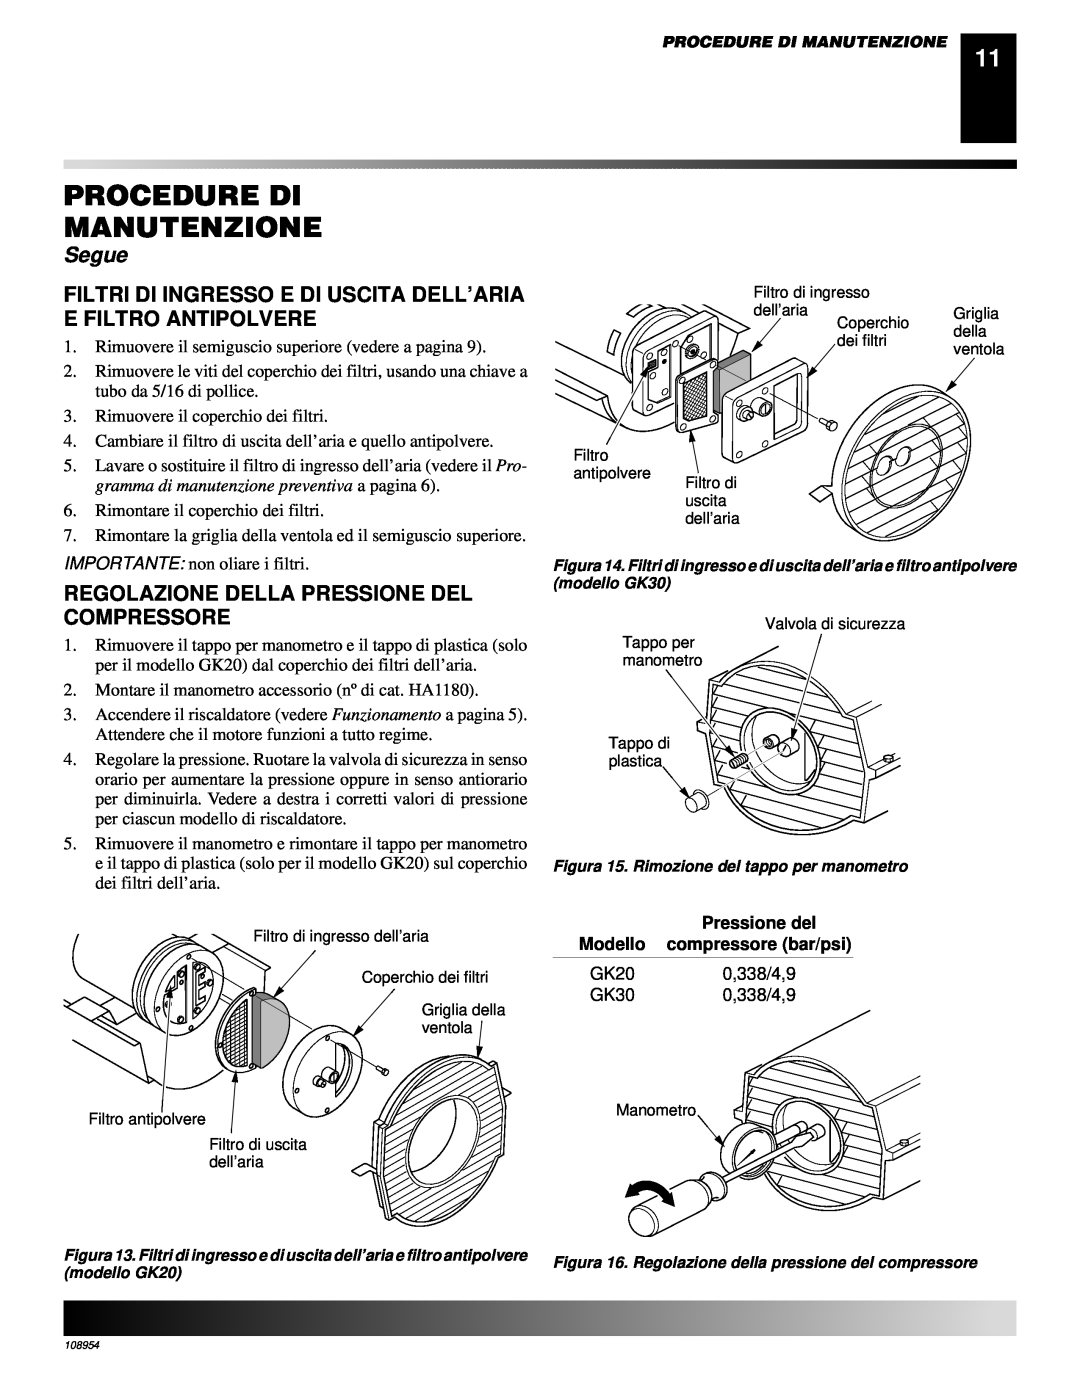 Desa GK30, GK20 owner manual Regolazione Della Pressione Del Compressore, Procedure Di Manutenzione, Segue 